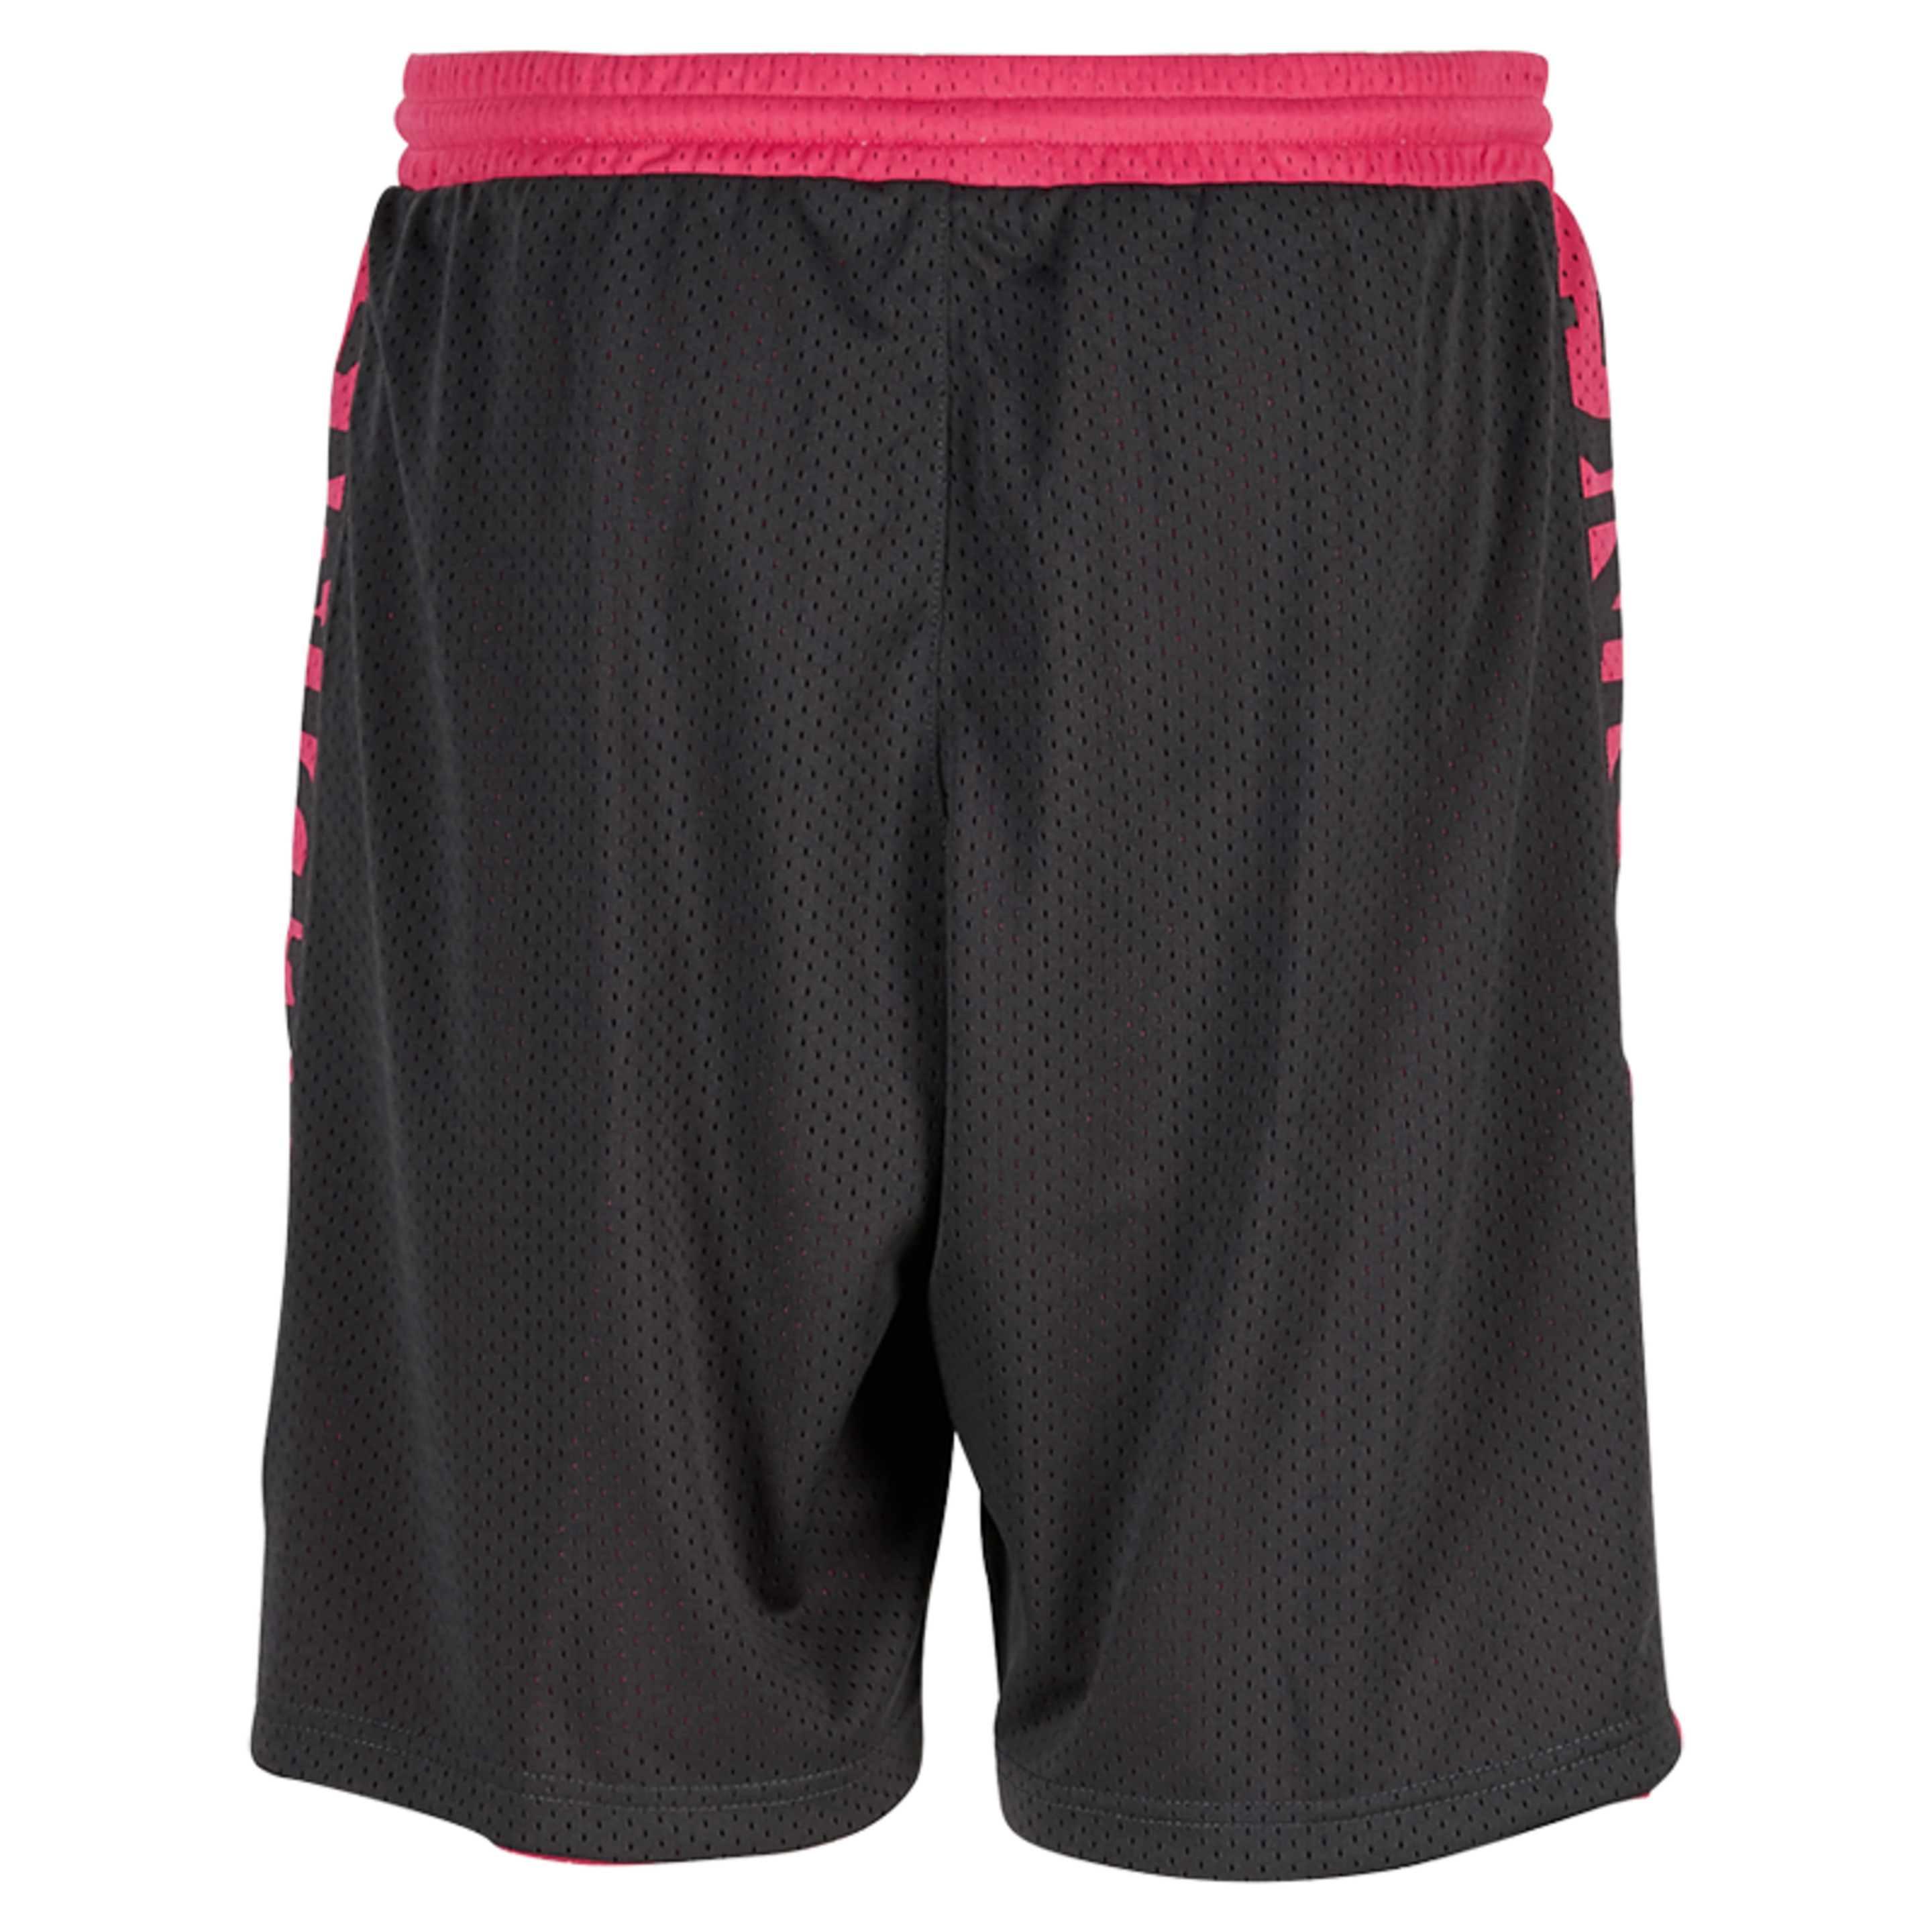 Essential Reversible Shorts 4her Black Spalding - gris_oscuro - Pantalón Corto De Baloncesto Essential Reversible Shorts 4her  MKP